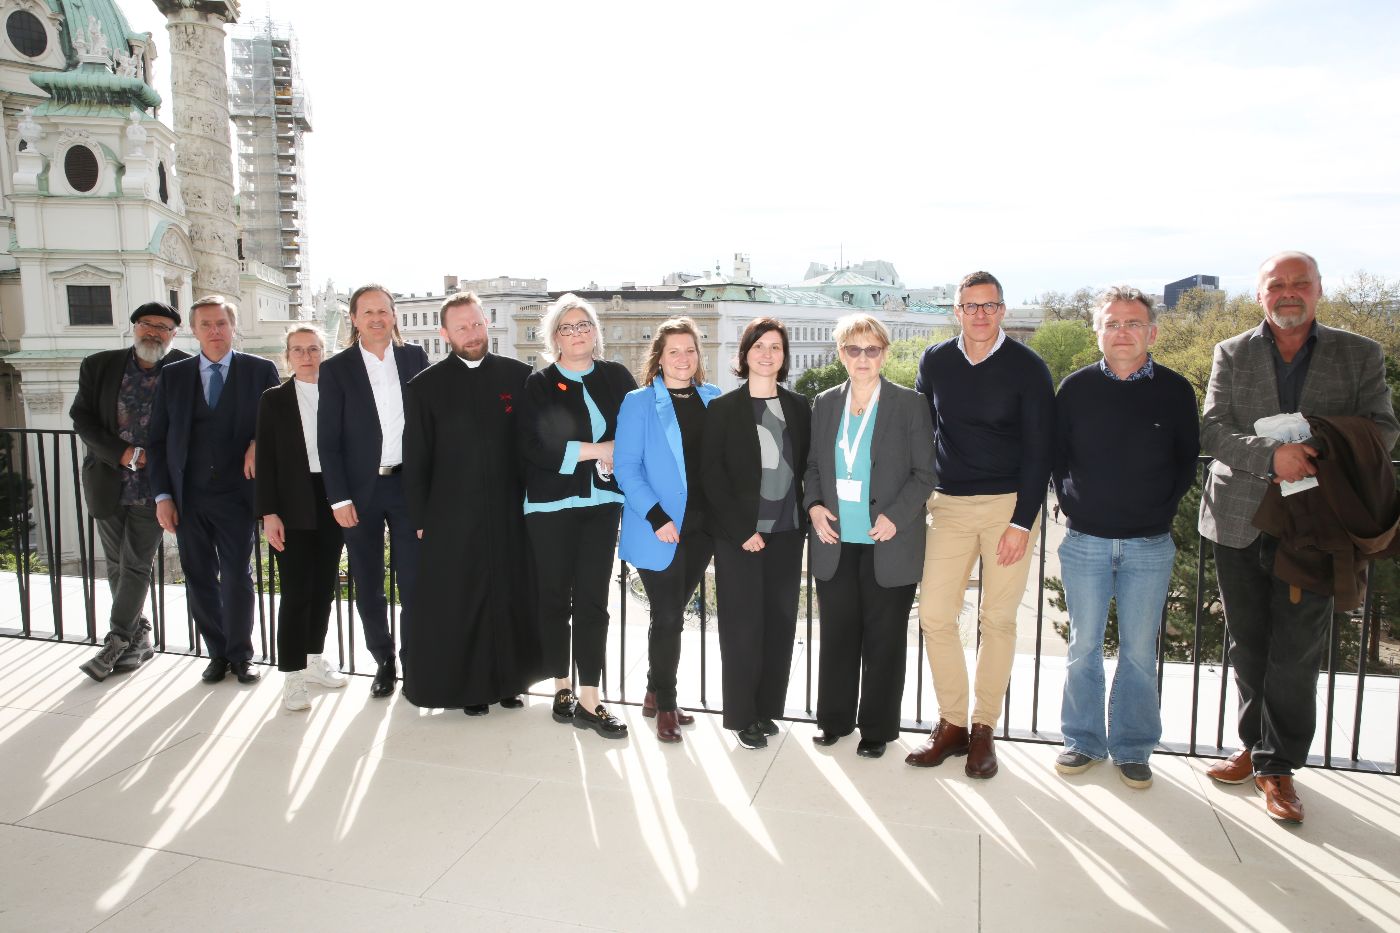 Gruppenbild: Die Referenten des Fachgesprächs auf der Terrasse des Wien Museums